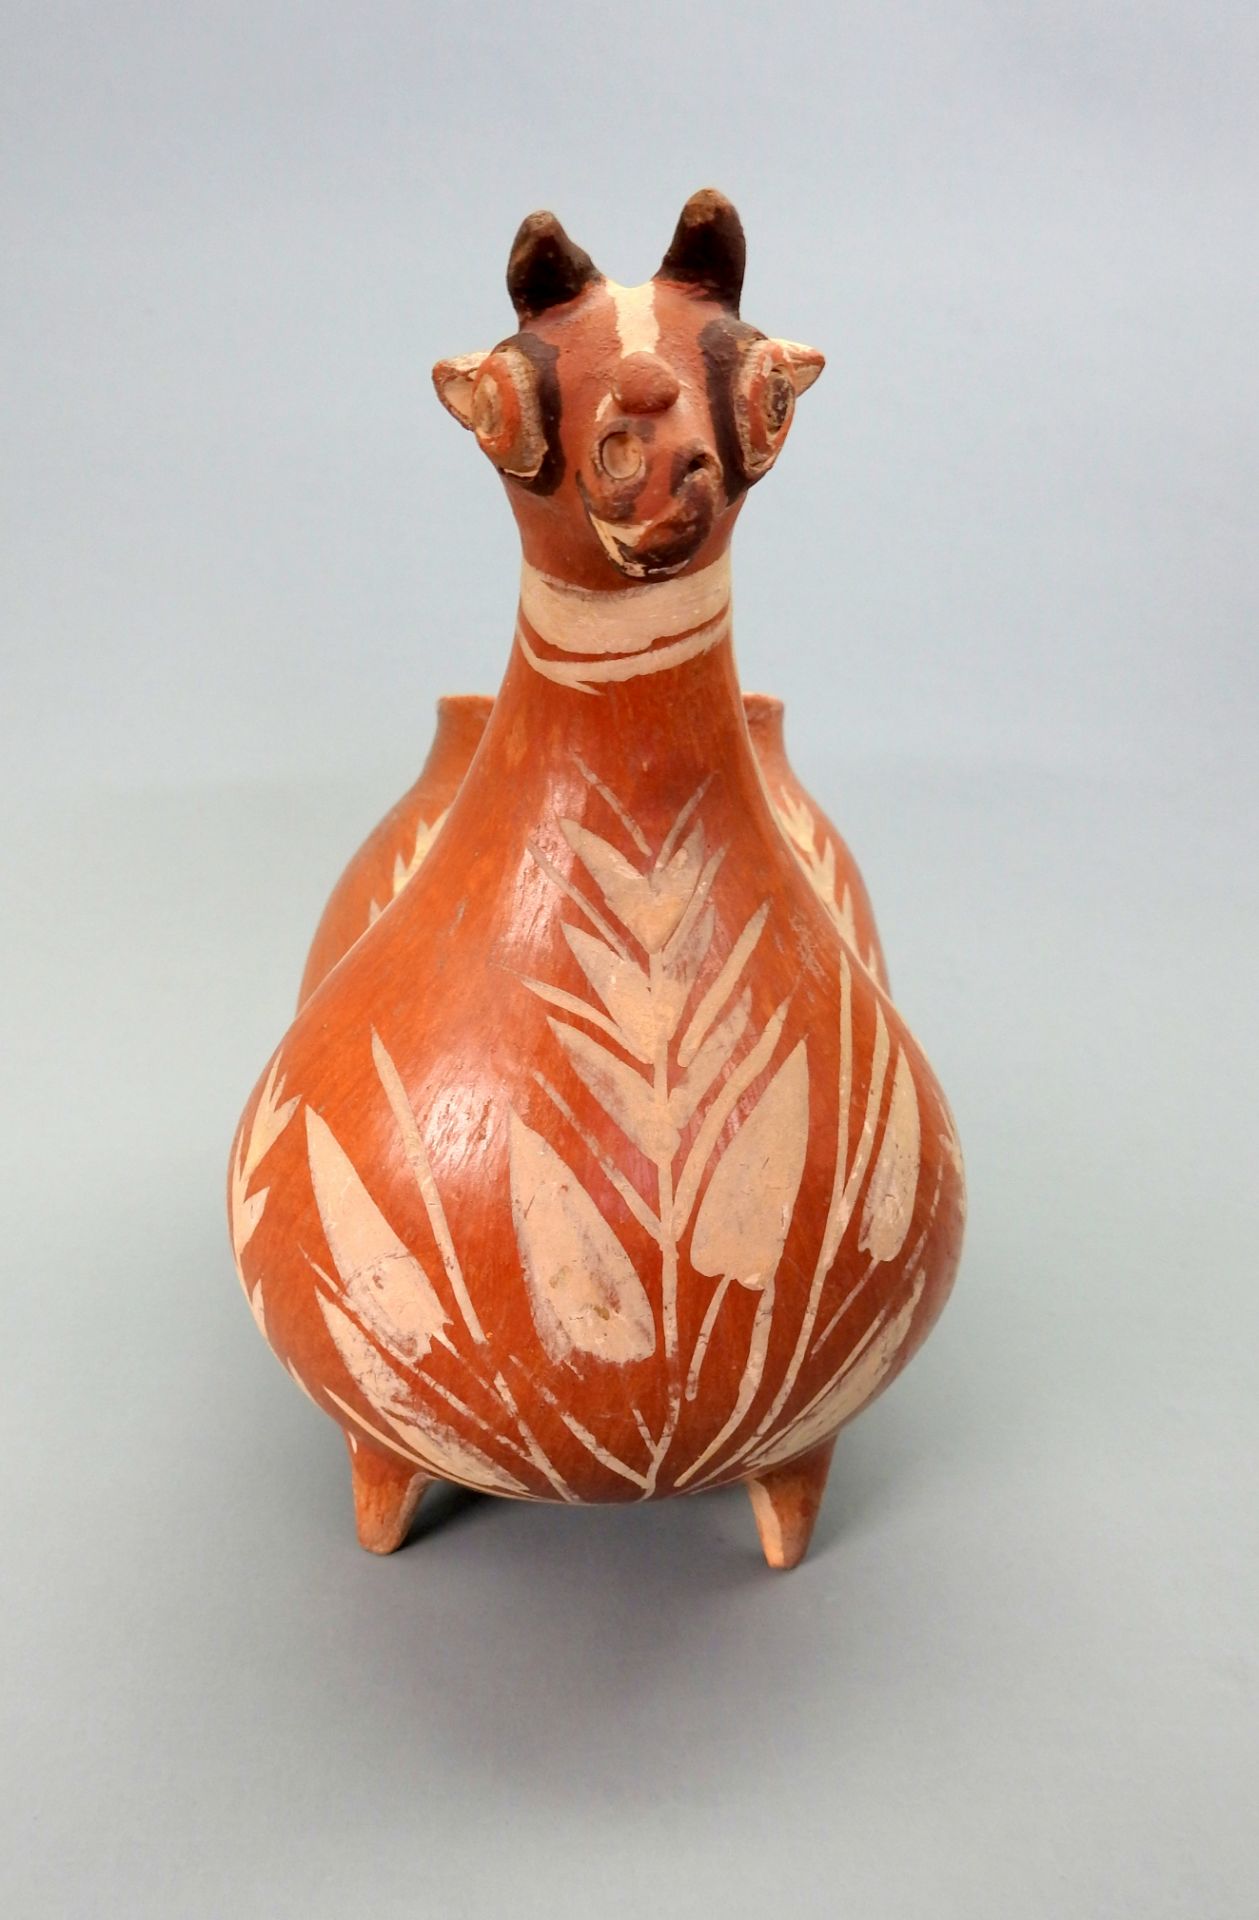 Südamerikanisches Trinkgefäß Keramik, handbemalt. Ein Trinkgefäß in Form eines Fa - Image 2 of 5